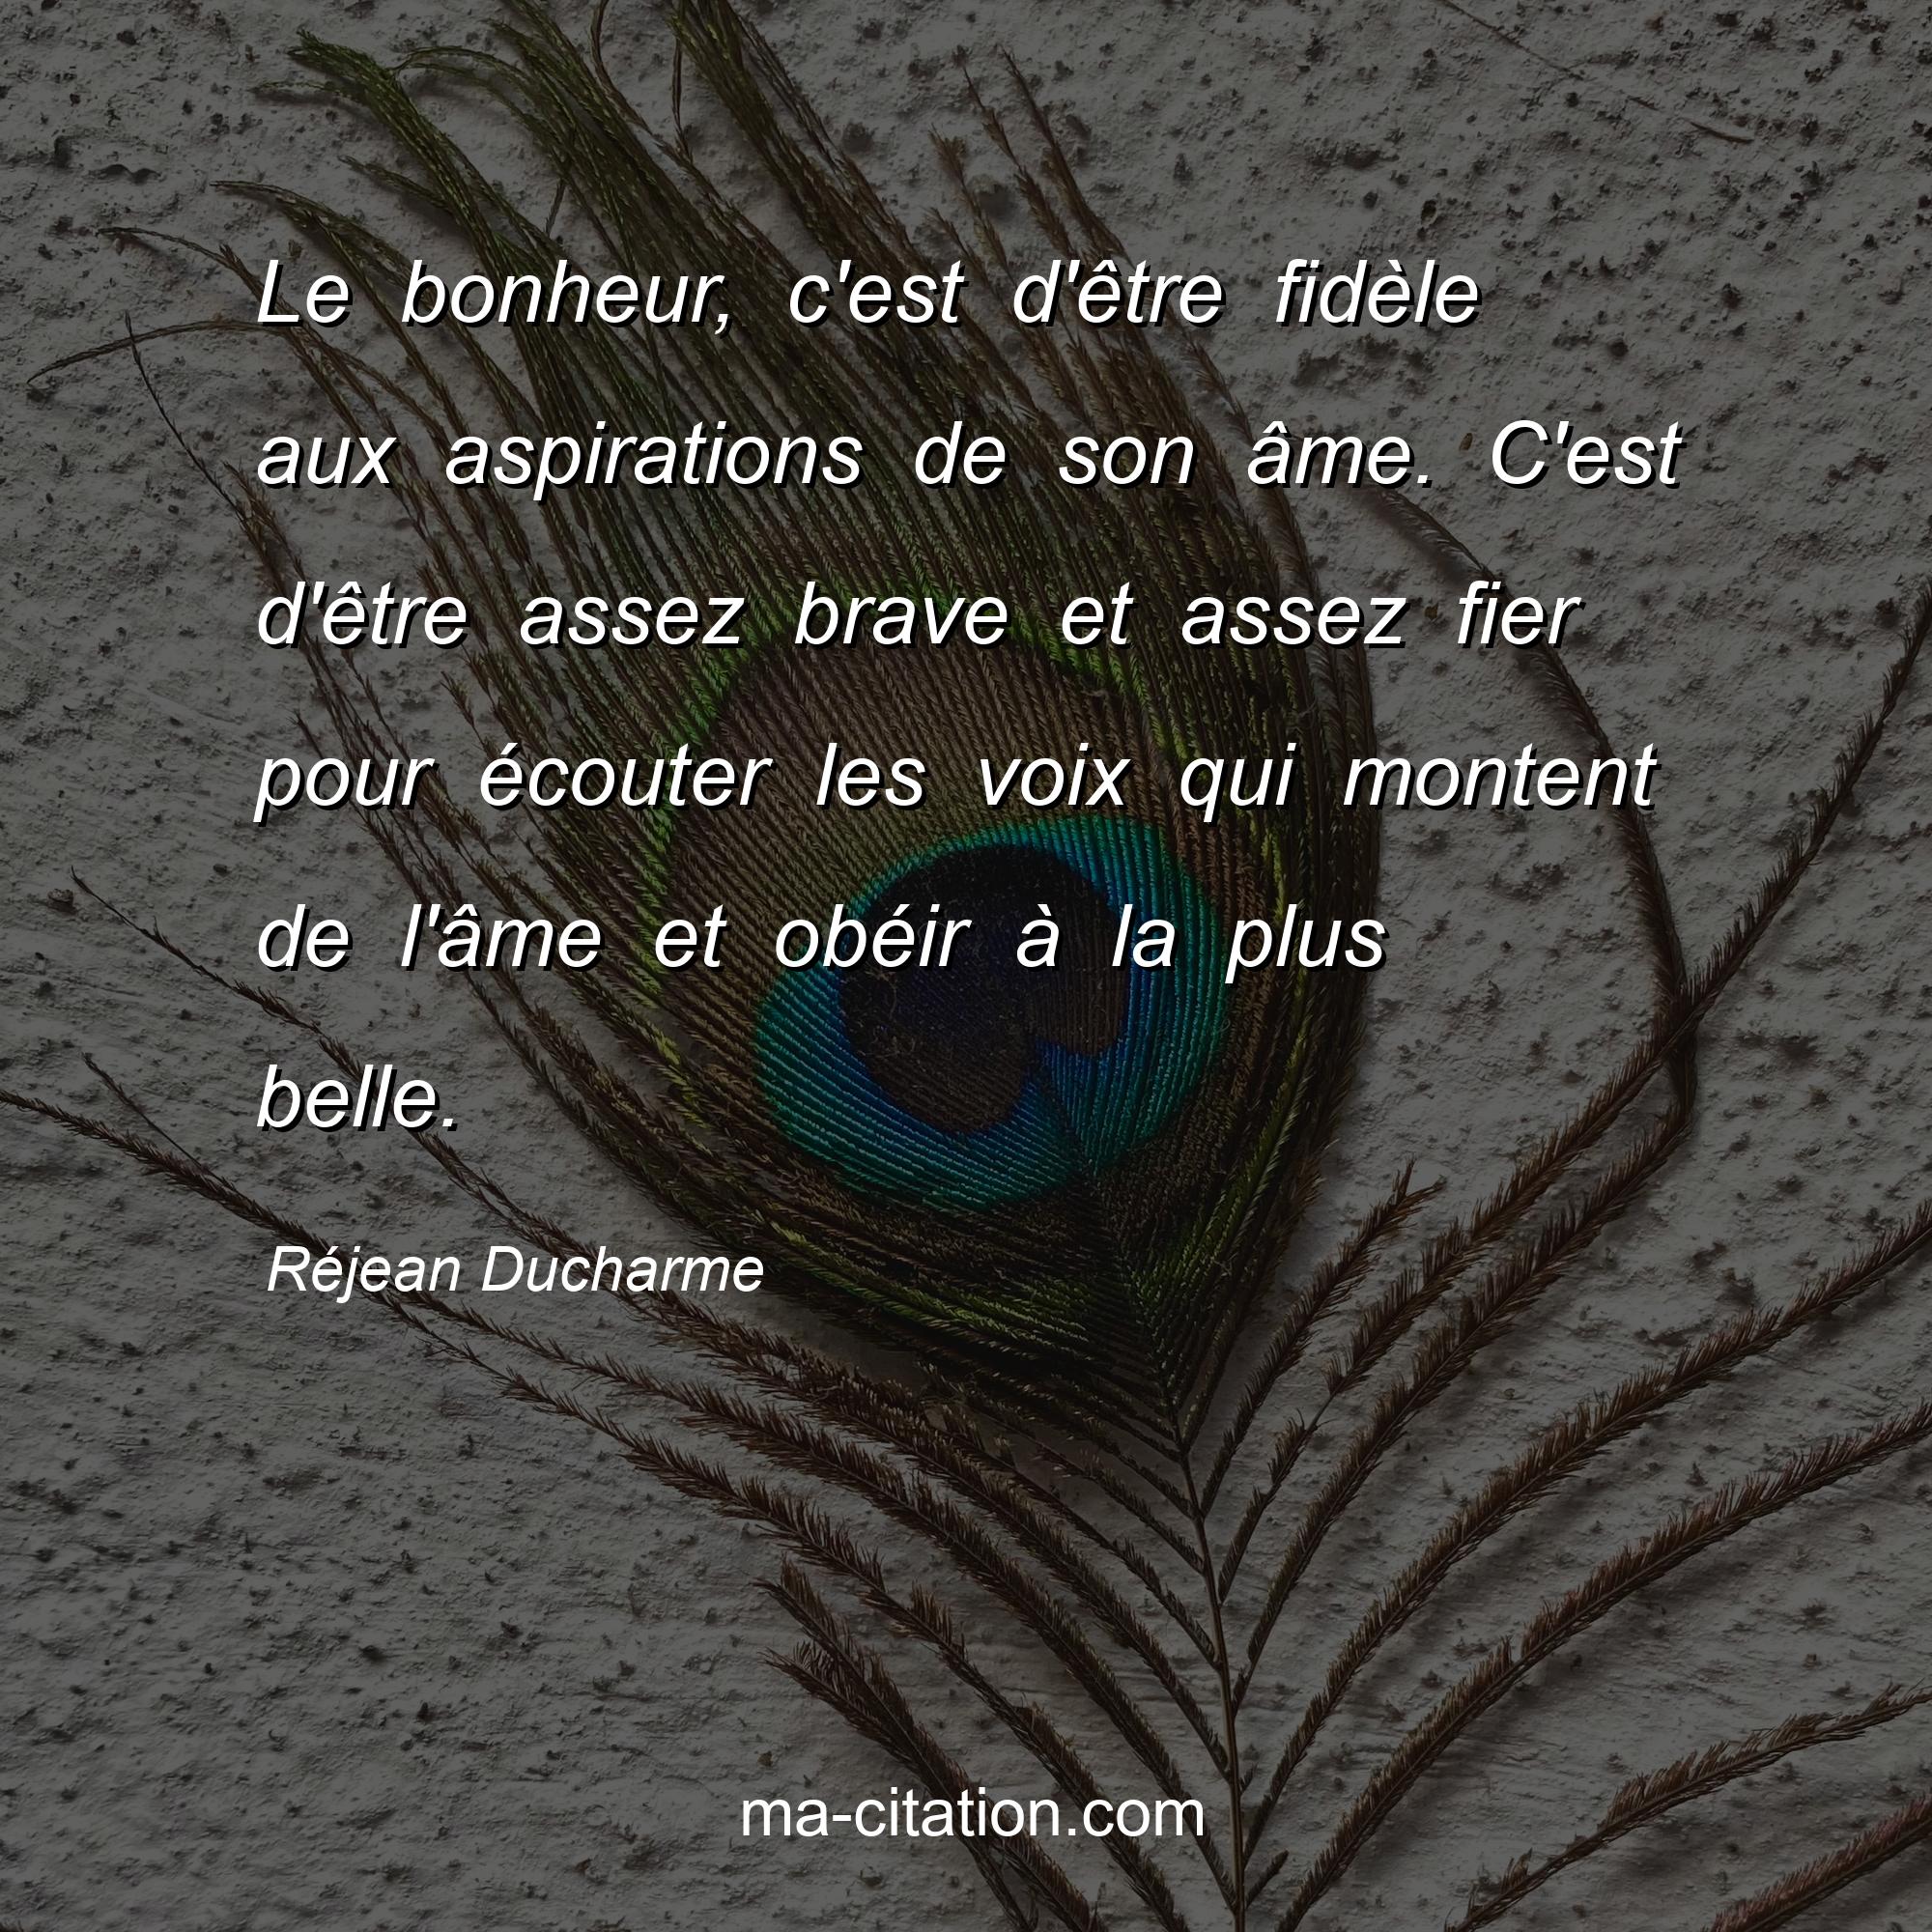 Réjean Ducharme : Le bonheur, c'est d'être fidèle aux aspirations de son âme. C'est d'être assez brave et assez fier pour écouter les voix qui montent de l'âme et obéir à la plus belle.